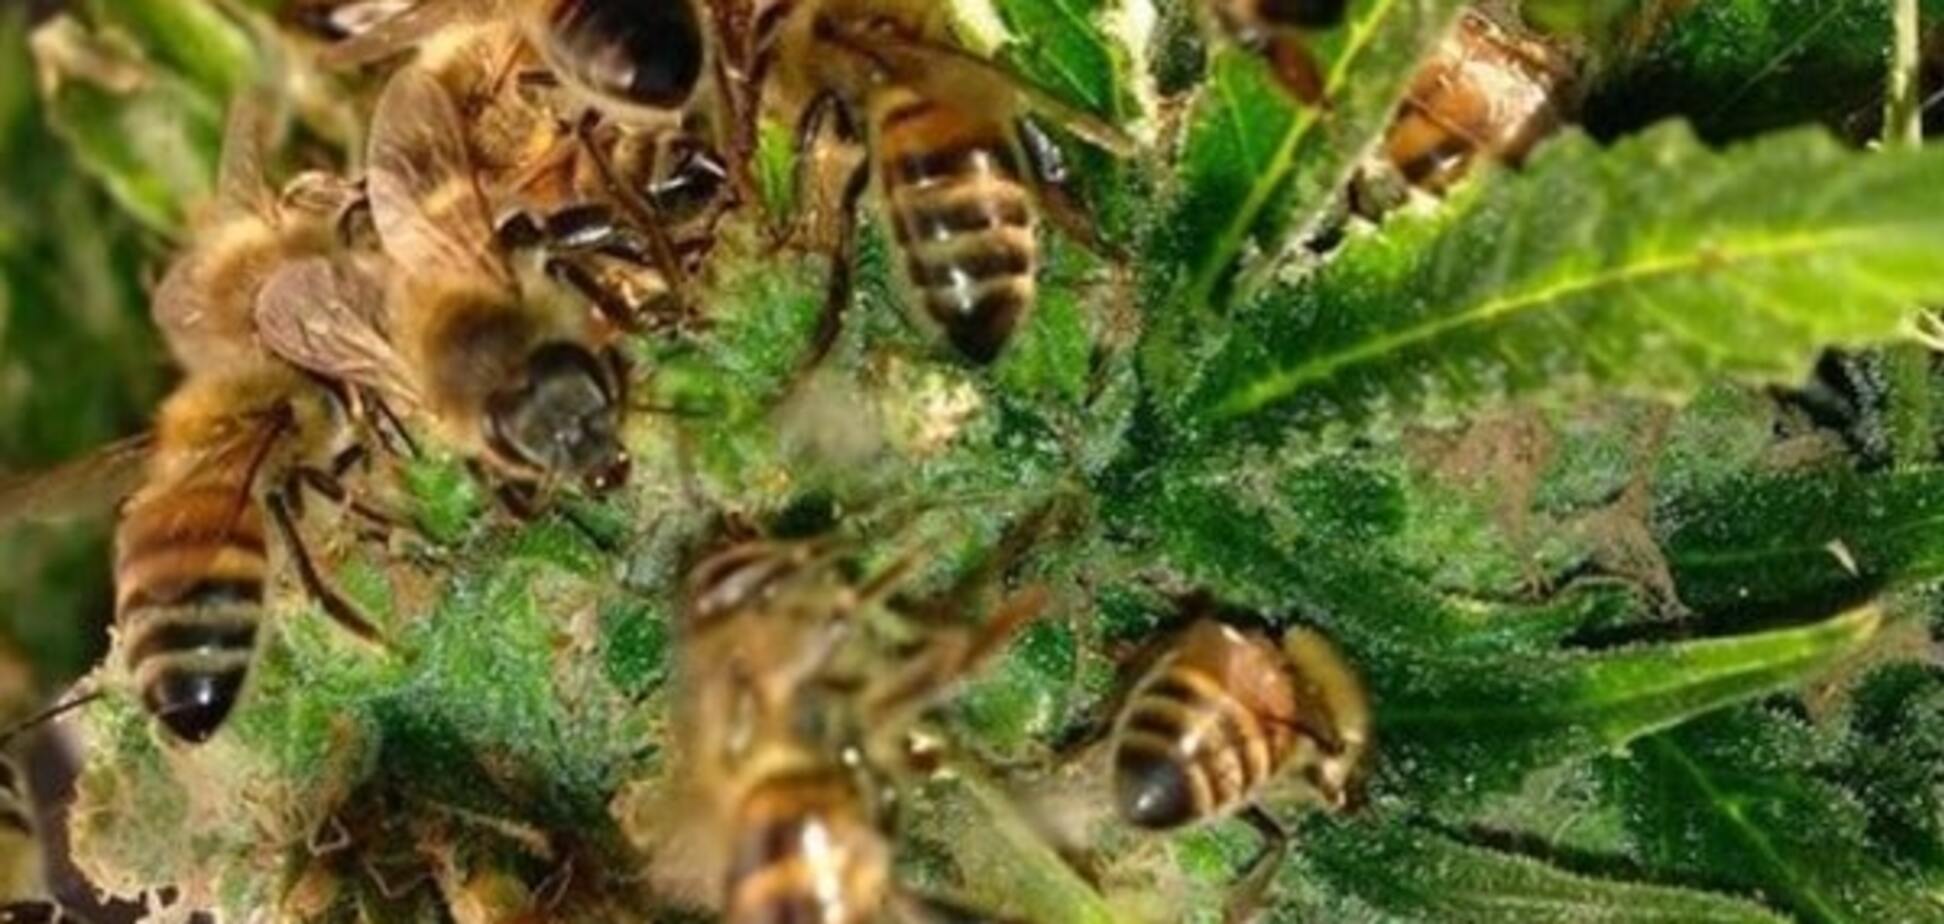 Француз-'кайфожор' научил пчел делать мед из конопли: видеофакт